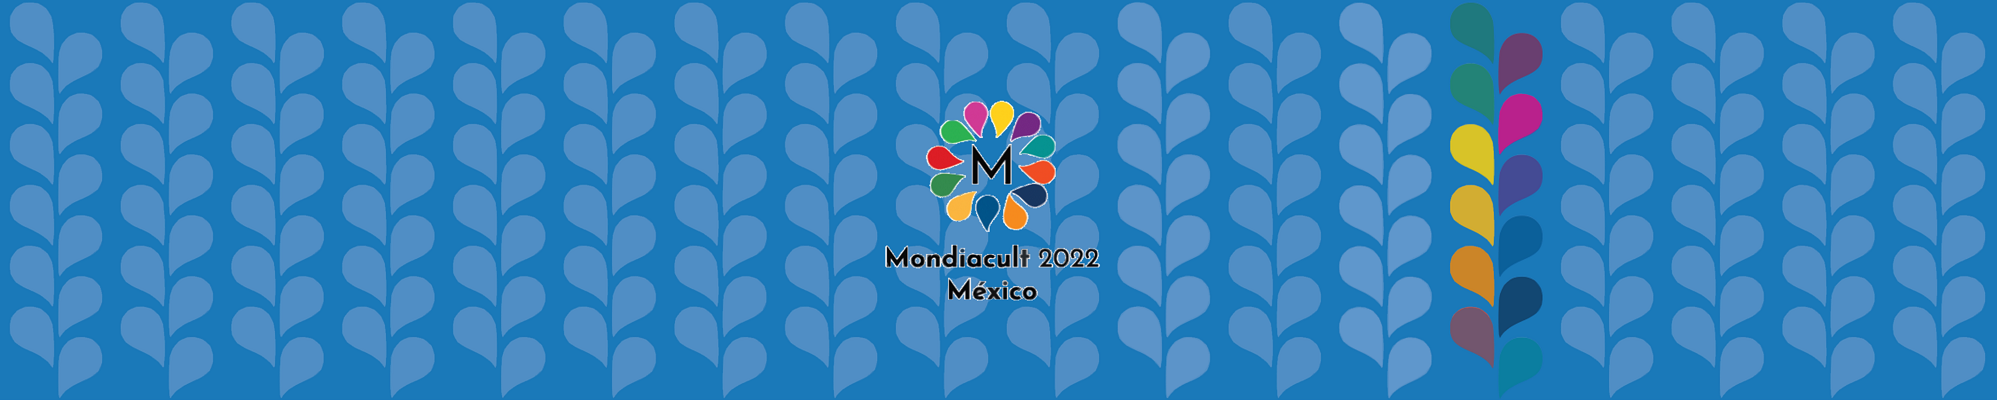 HOMO ESPACIOS: Actualizaciones rumbo a Mondiacult 2022, repatriación patrimonial… y en la cultura